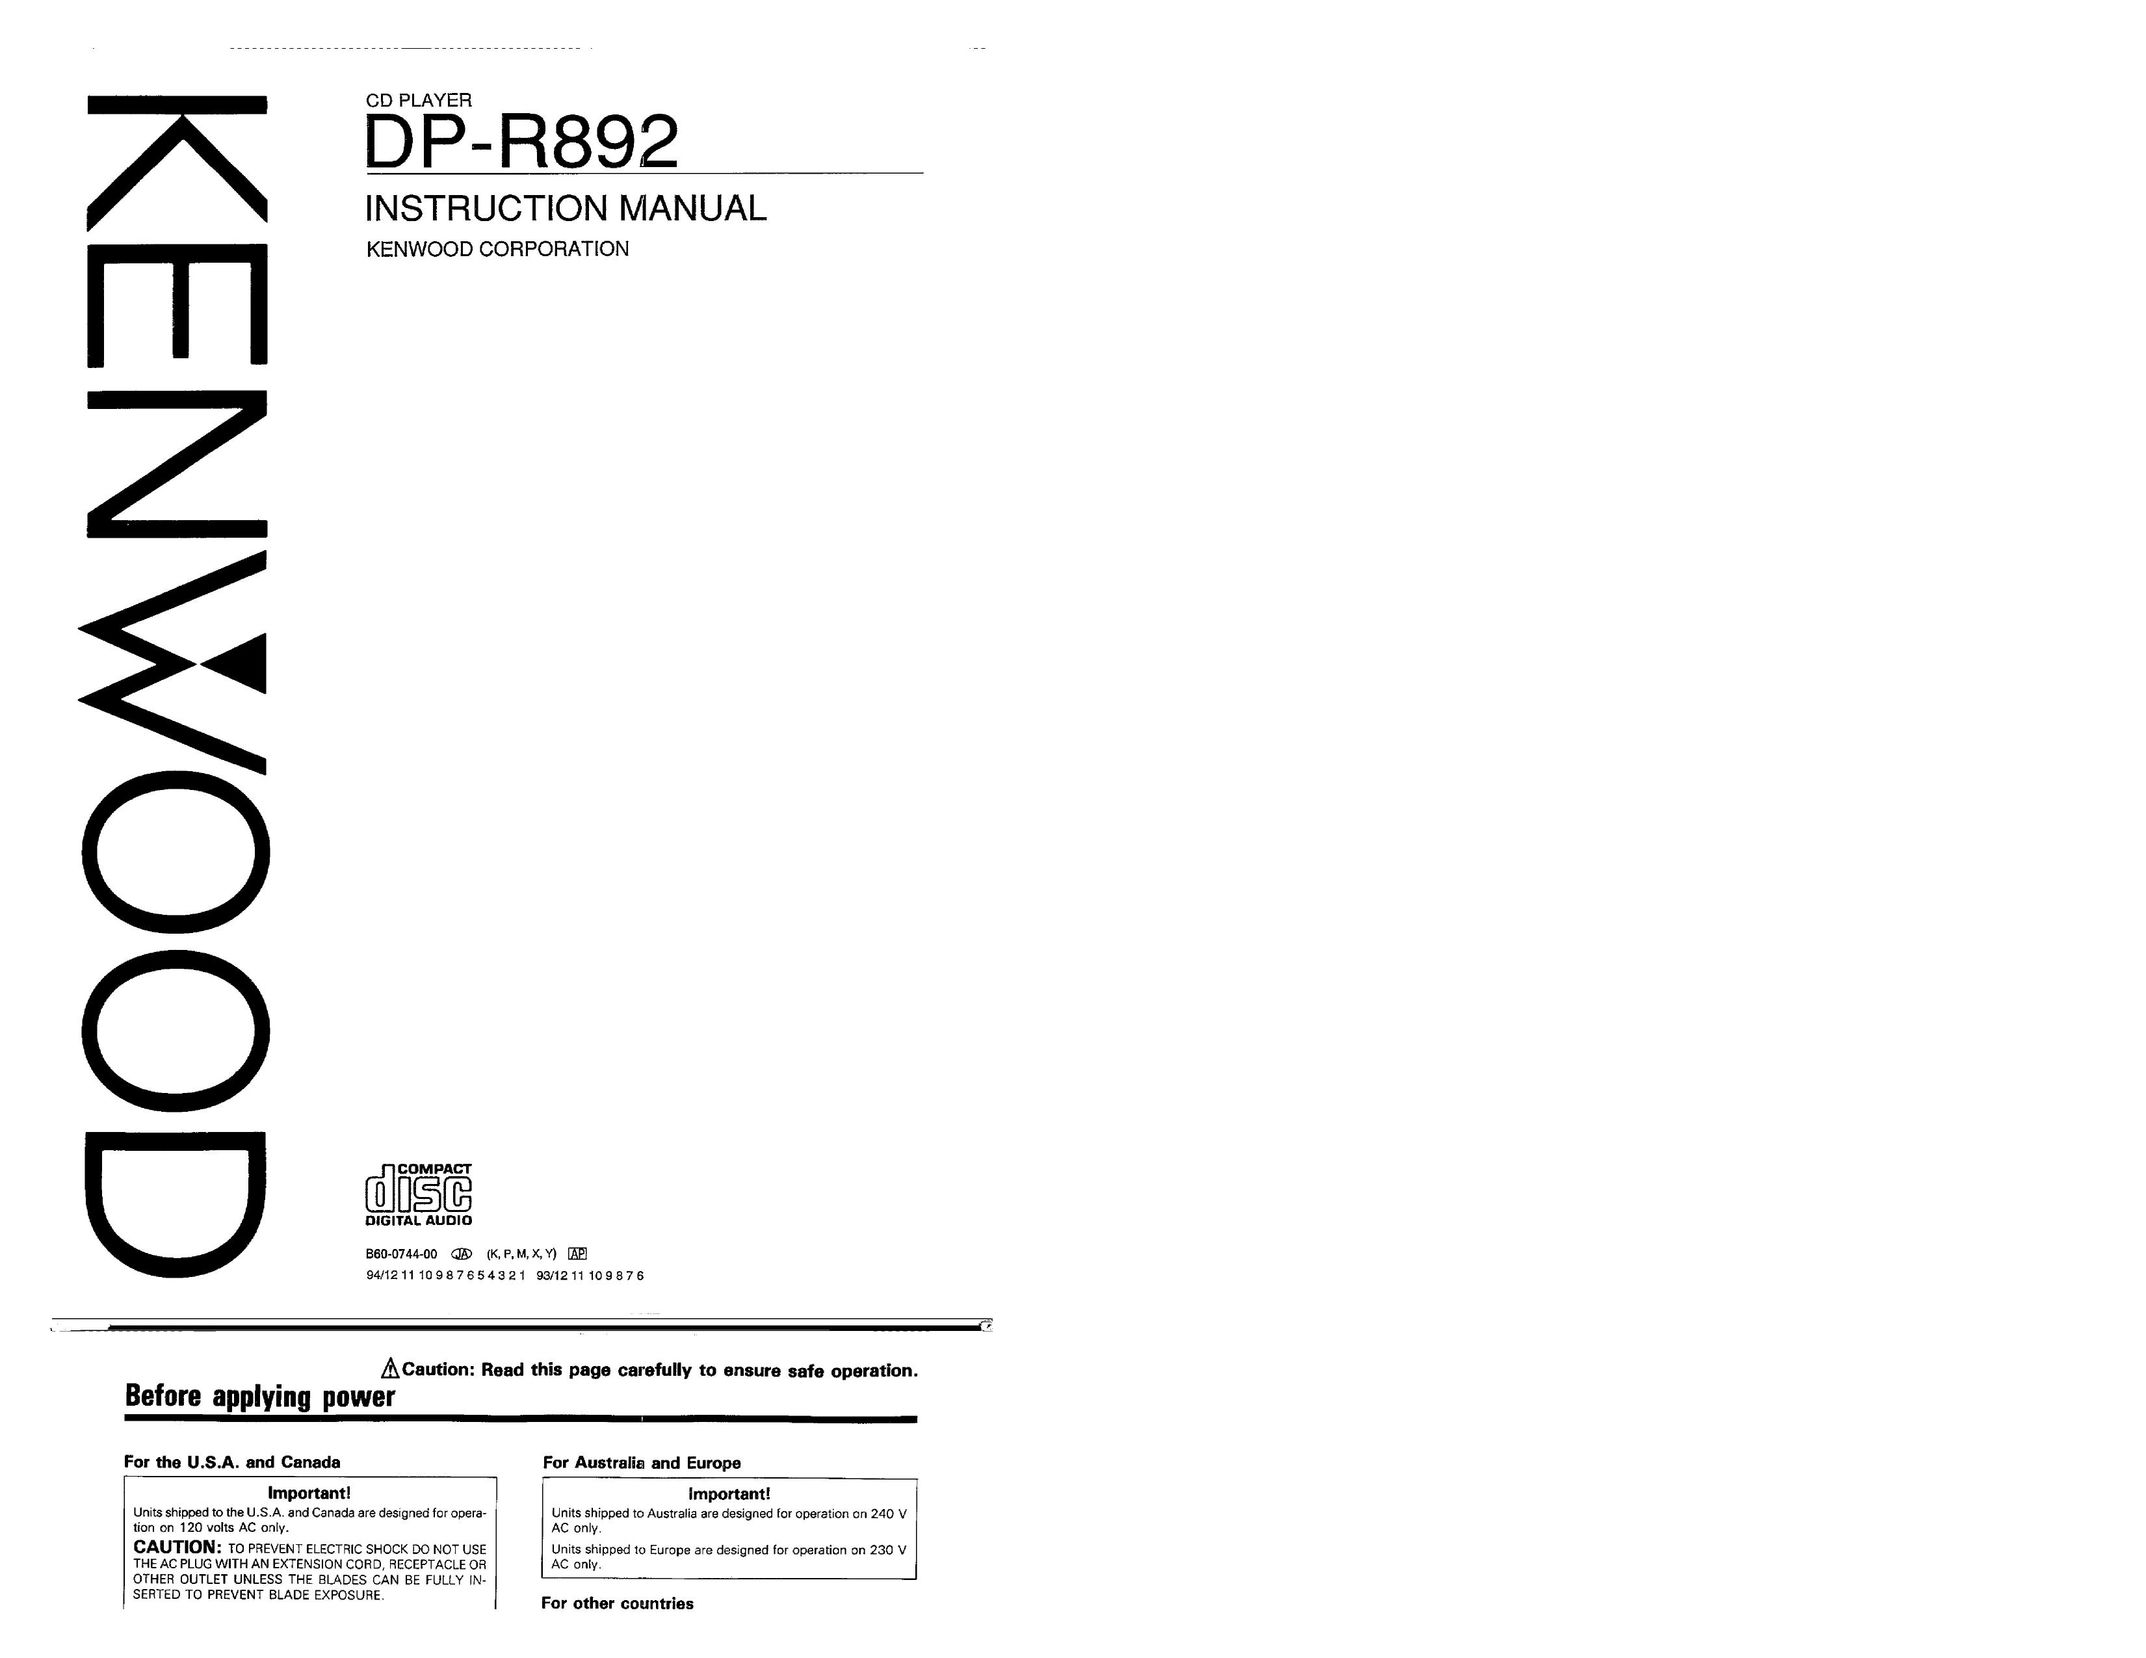 Kenwood DP-R892 CD Player User Manual